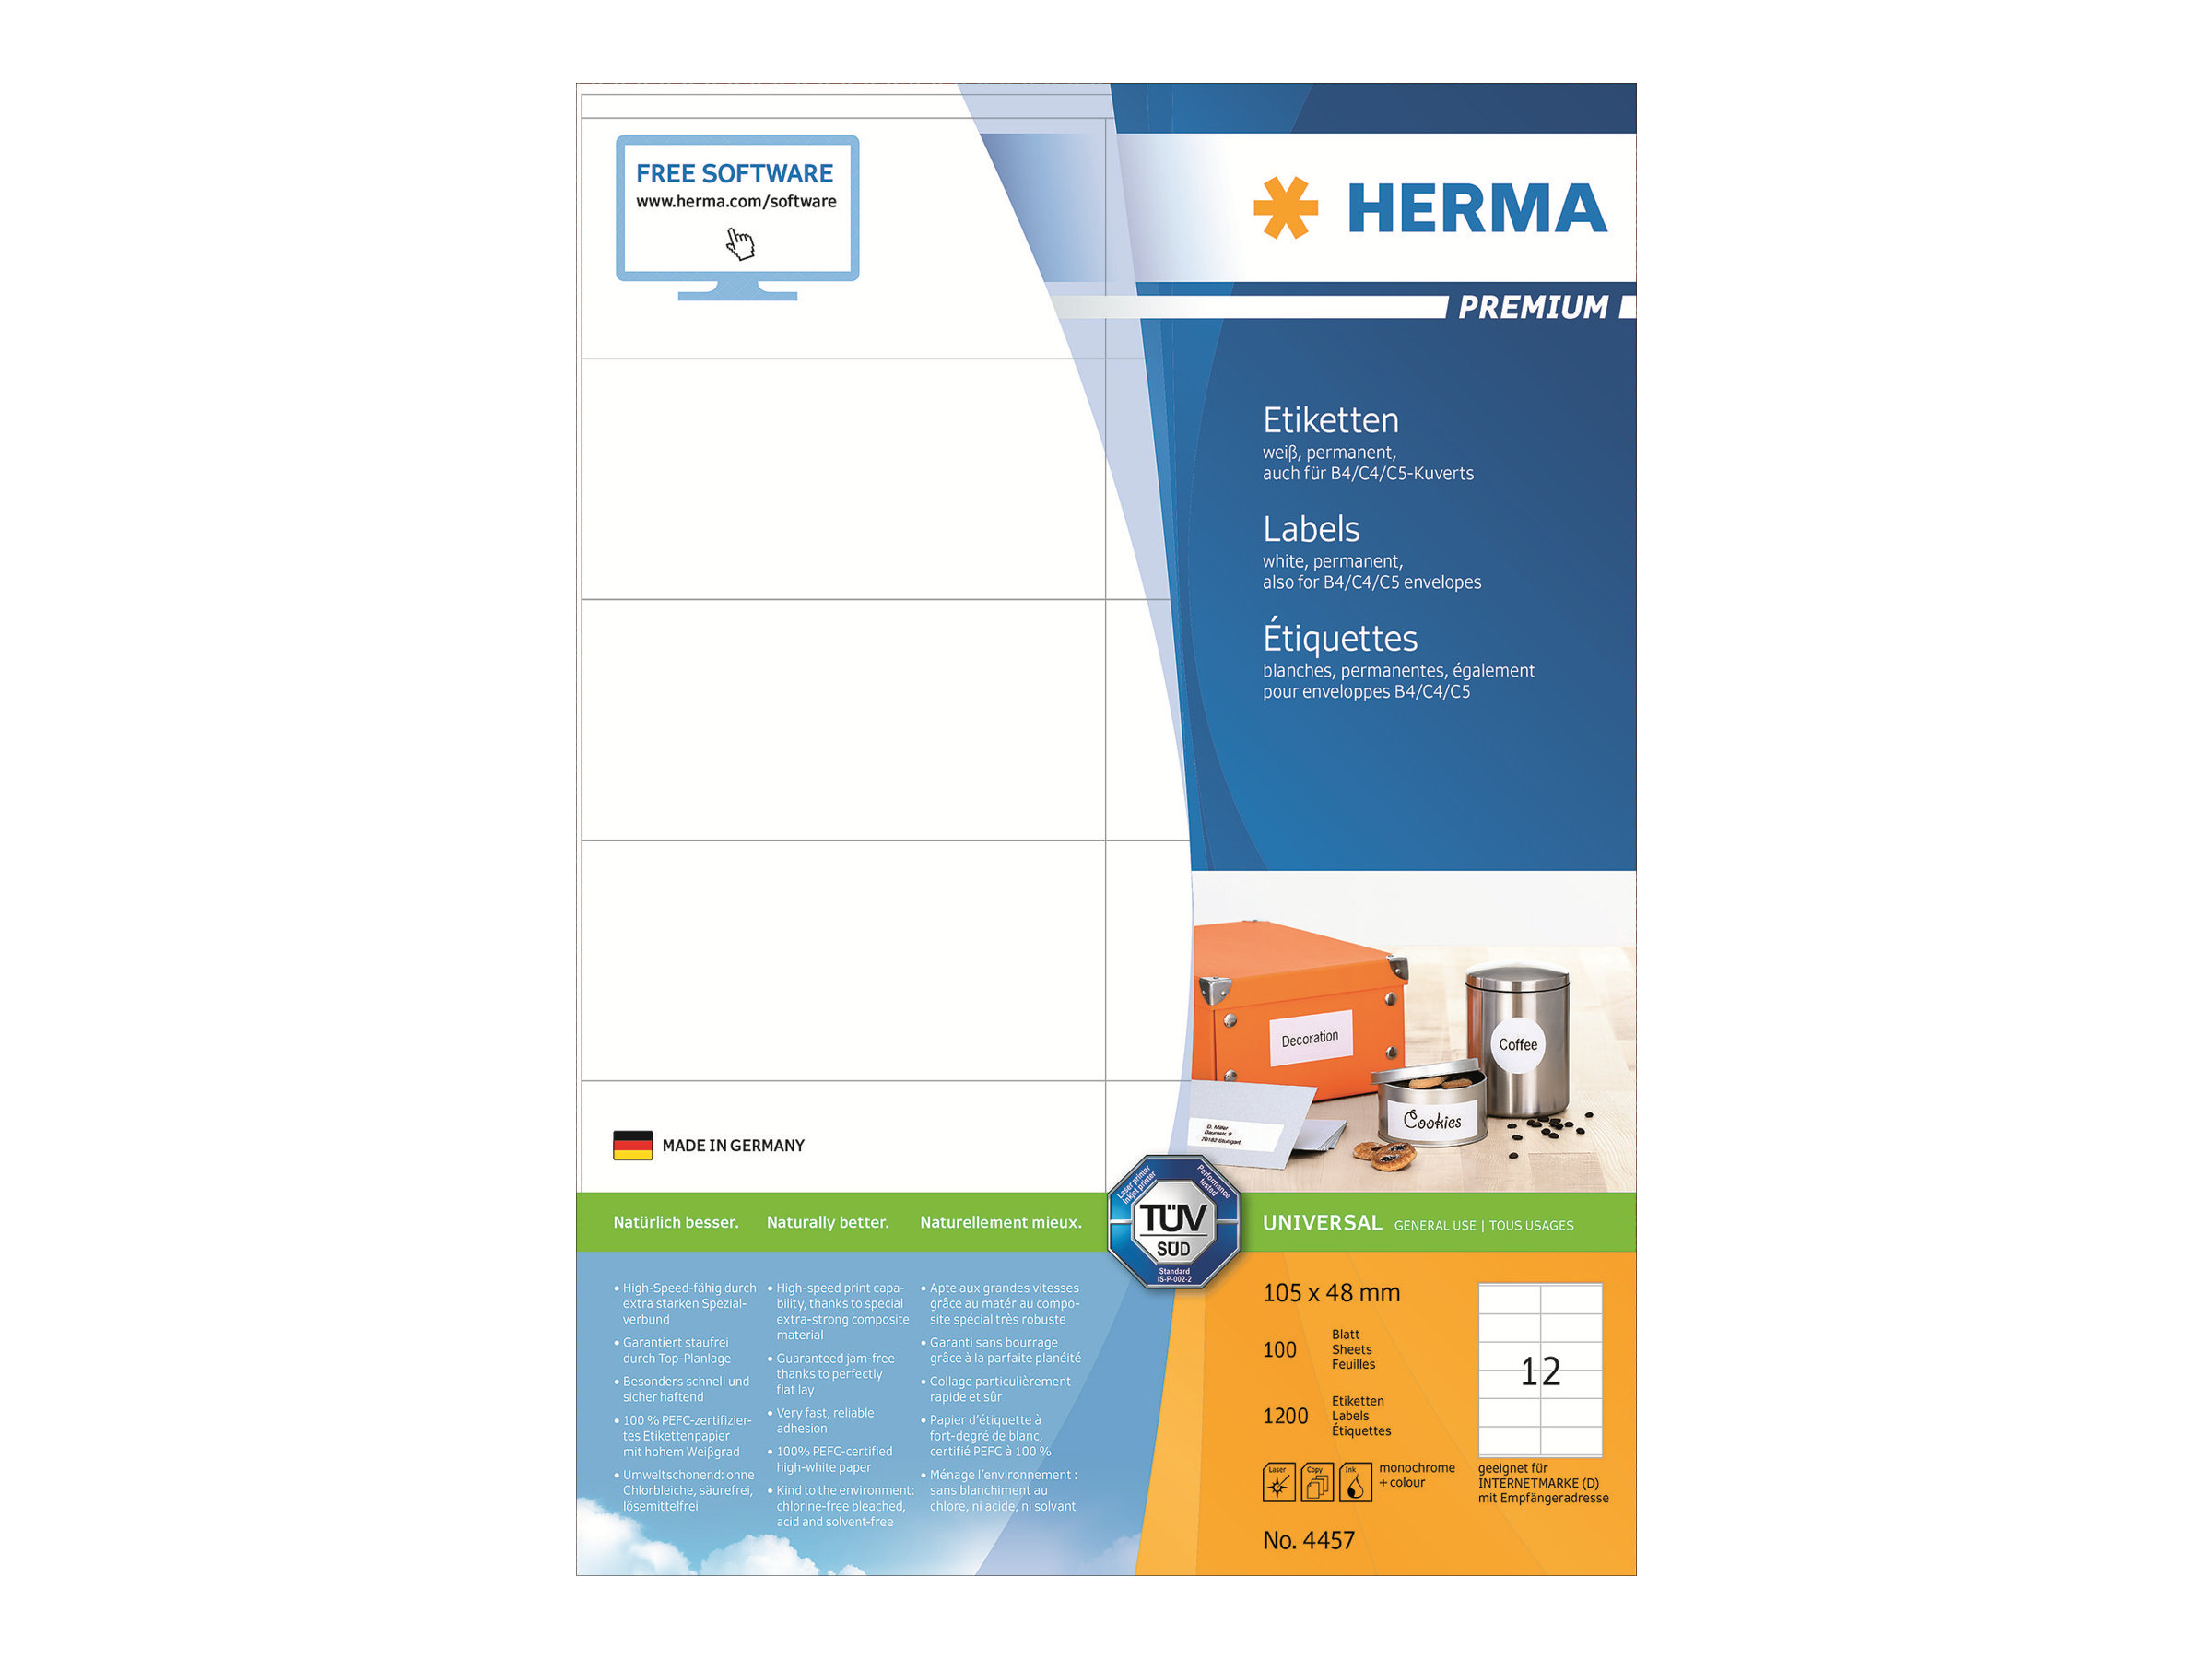 HERMA Premium - Papier - matt - permanent selbstklebend - weiß - 105 x 48 mm 1200 Etikett(en) (100 Bogen x 12)